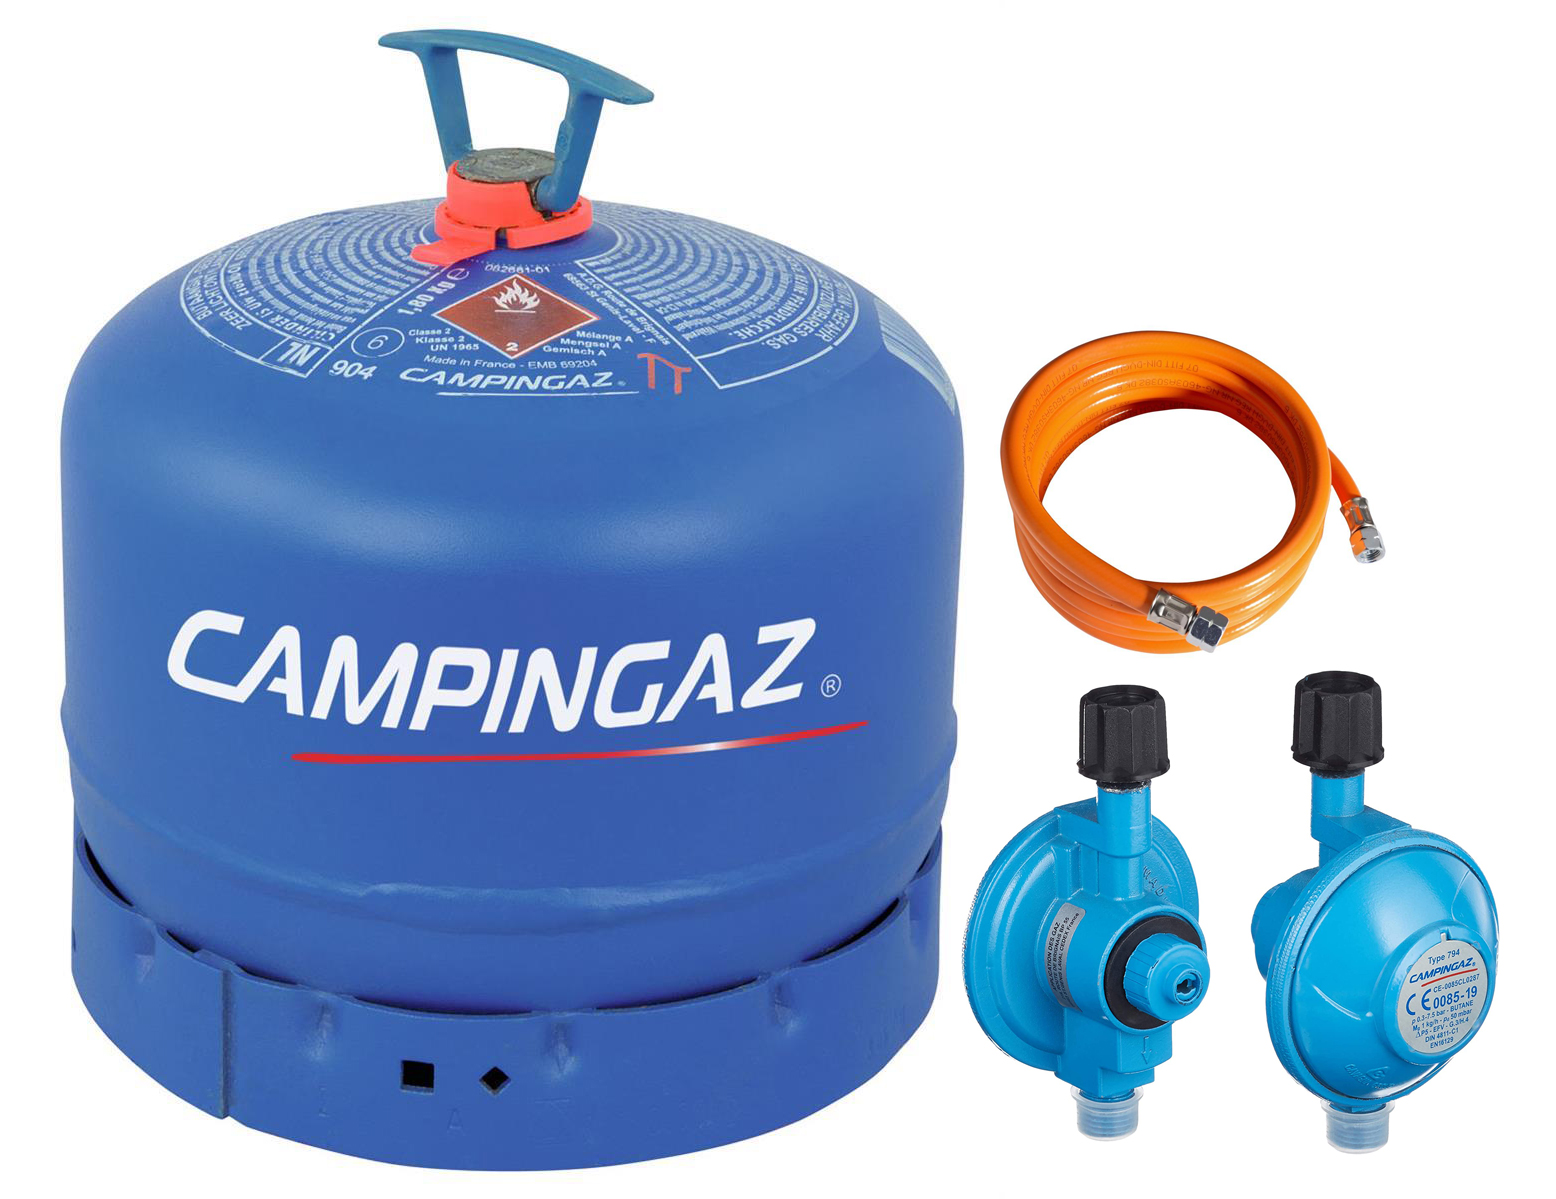 Campingaz R 904 Gasflasche gefüllt mit 1,8 kg Butangas mit 0,8 m Schlauch 50 mBar Regler